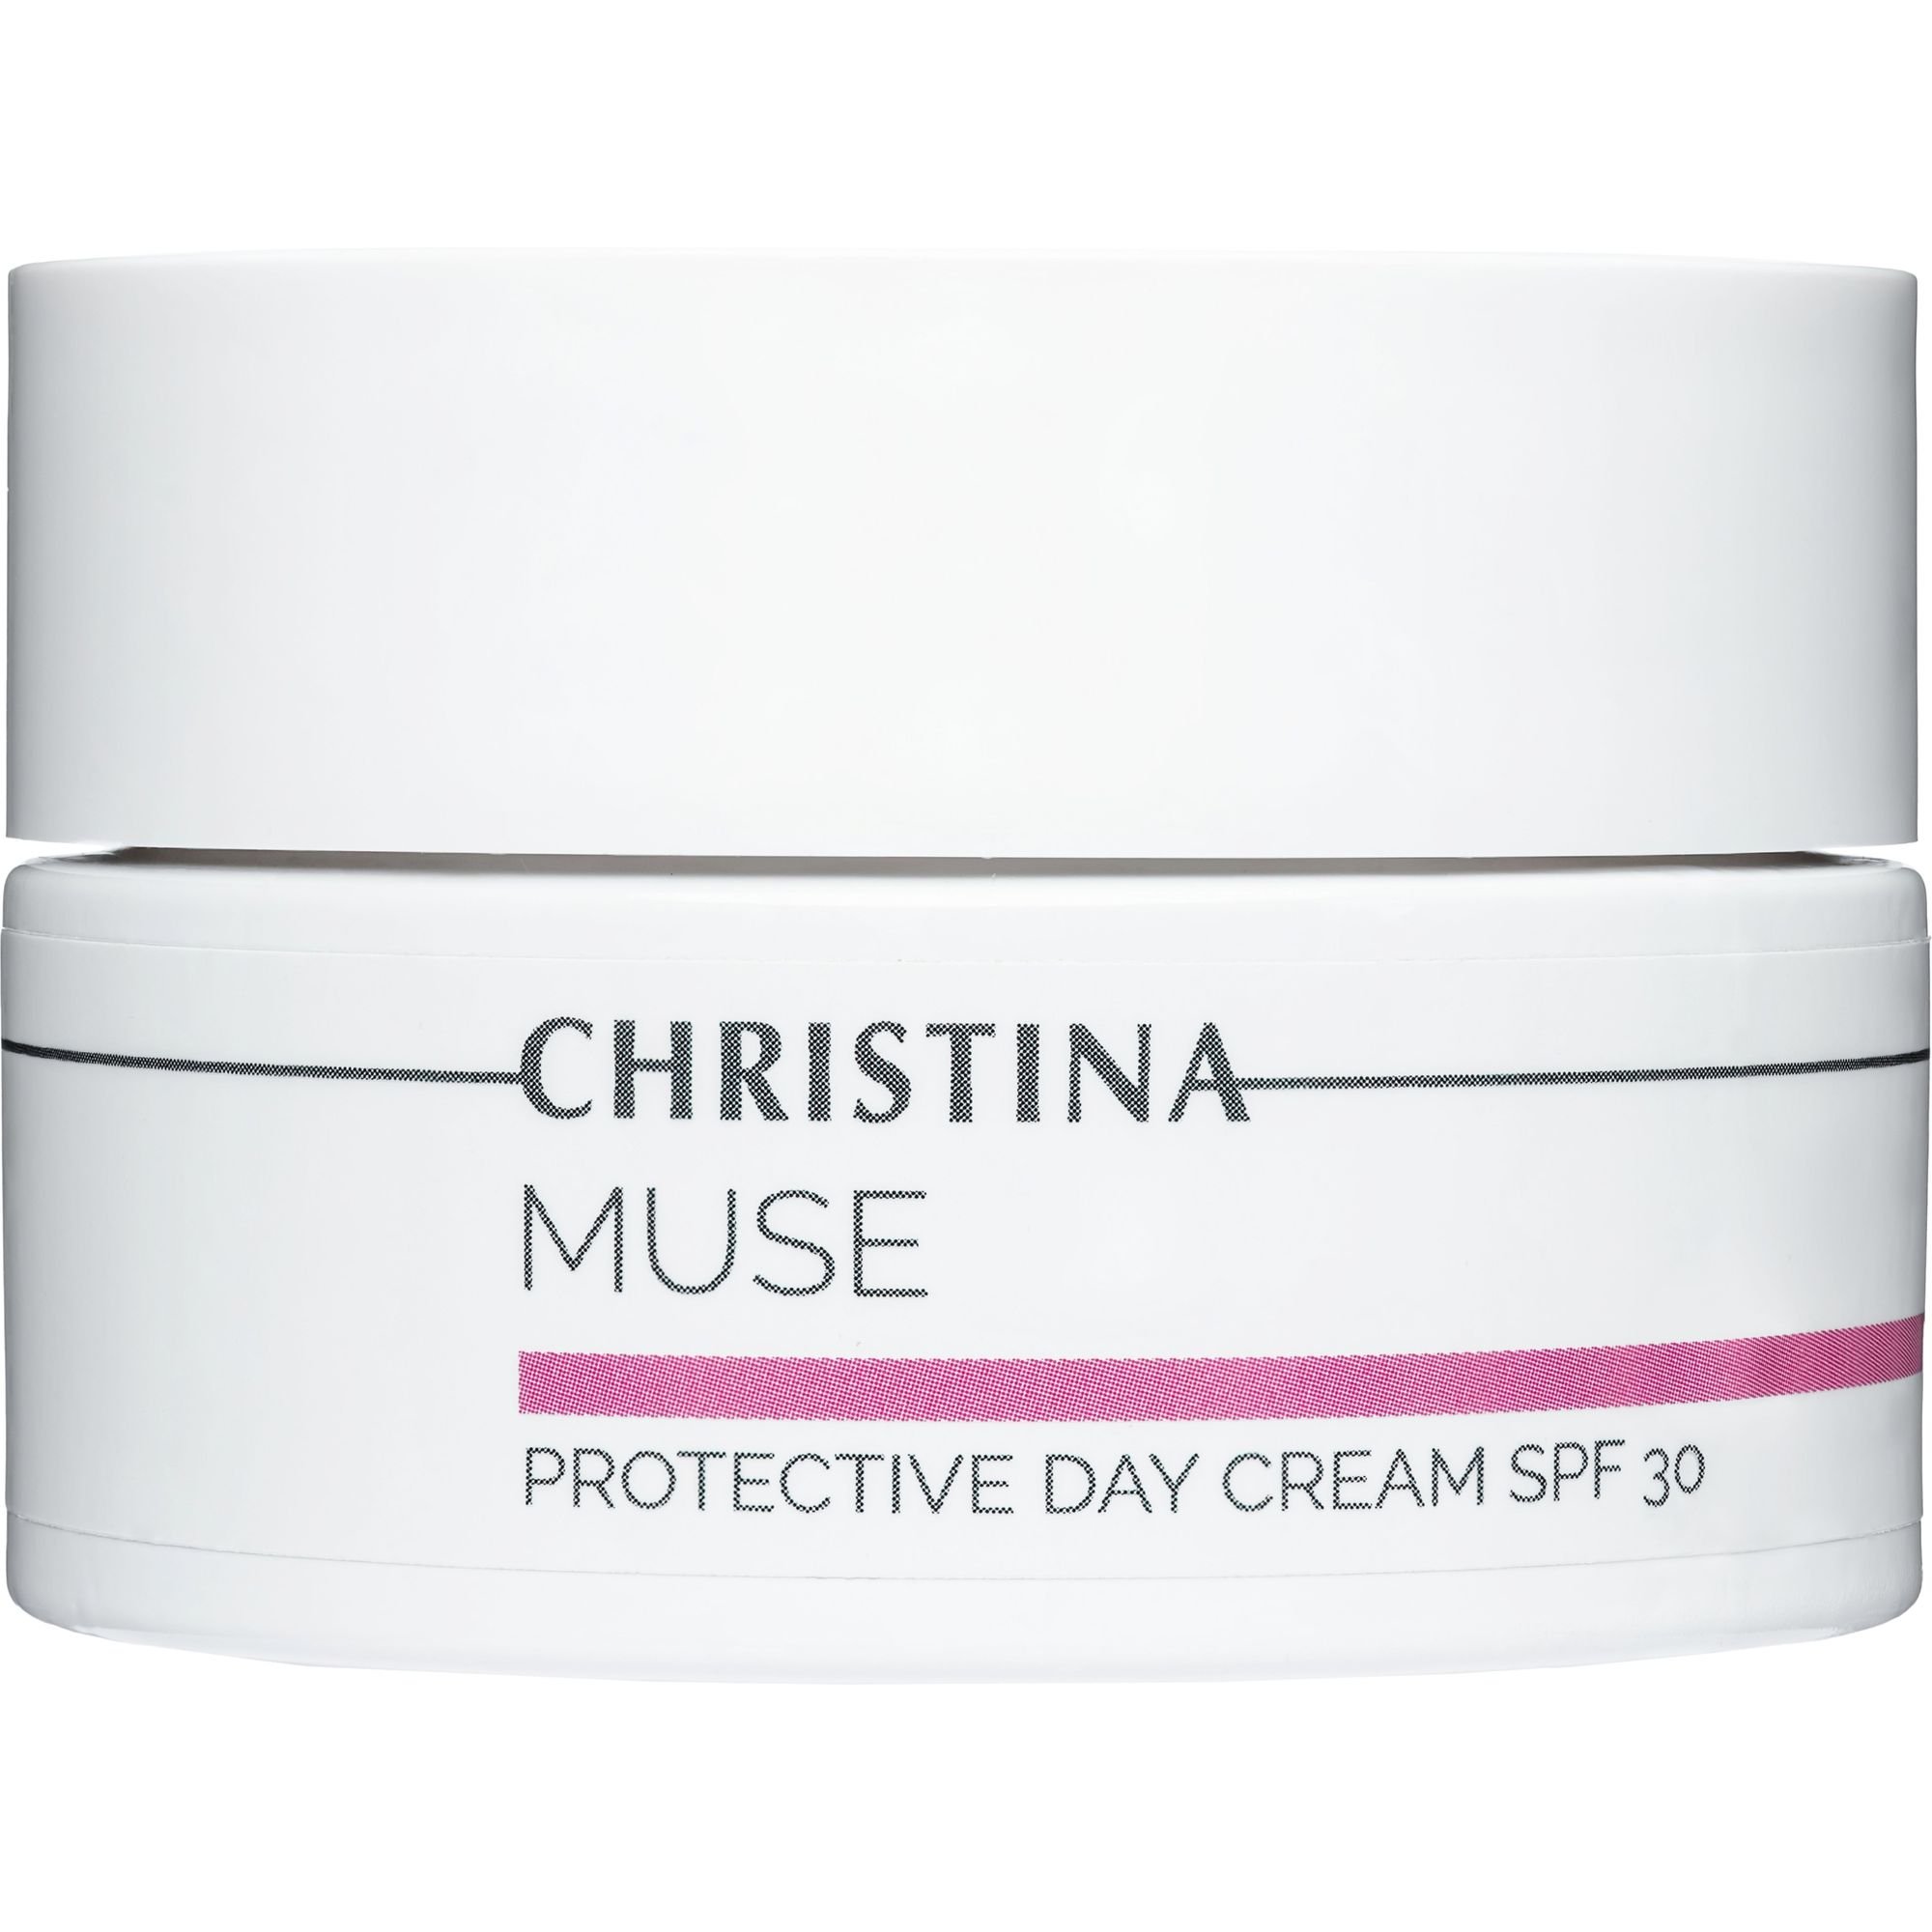 Защитный дневной крем Christina Muse Protective Day Cream SPF 30 50 мл - фото 1